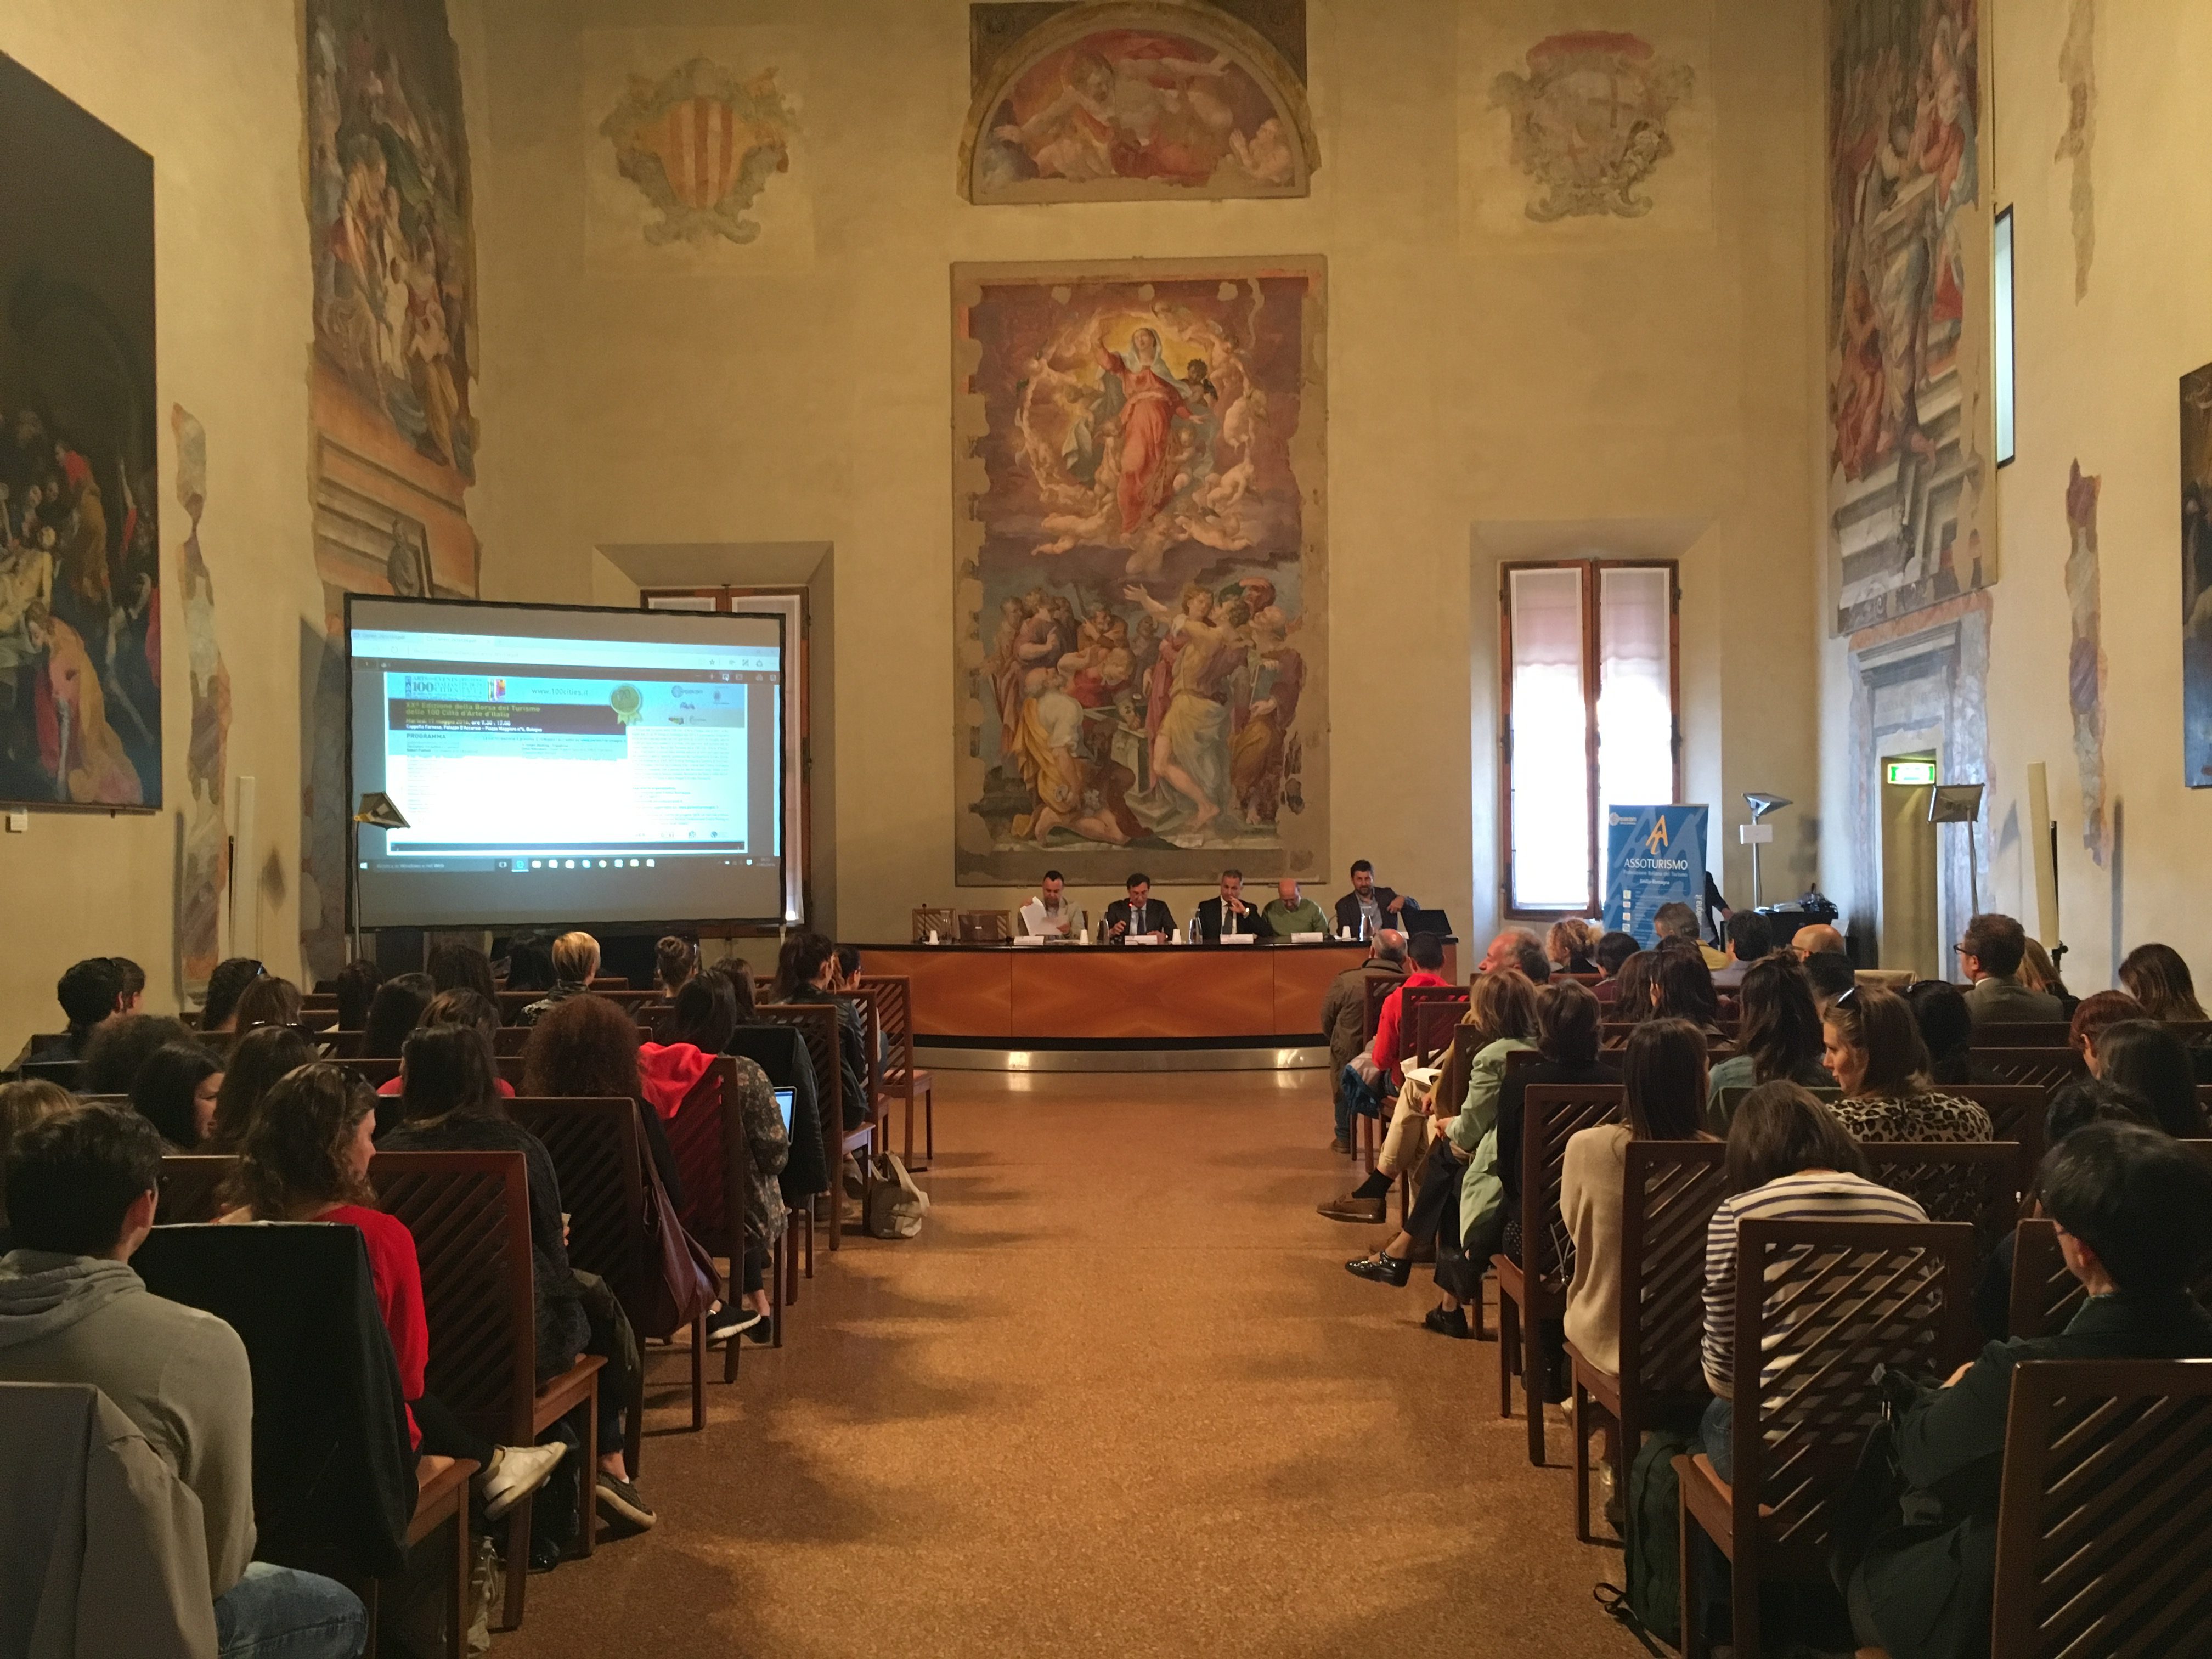 Nella prestigiosa Cappella Farnese il seminario: “Dal Prodotto alla Destinazione”. Come cambia la promozione turistica con le nuove tecnologie e legge regionale sul turismo appena varata